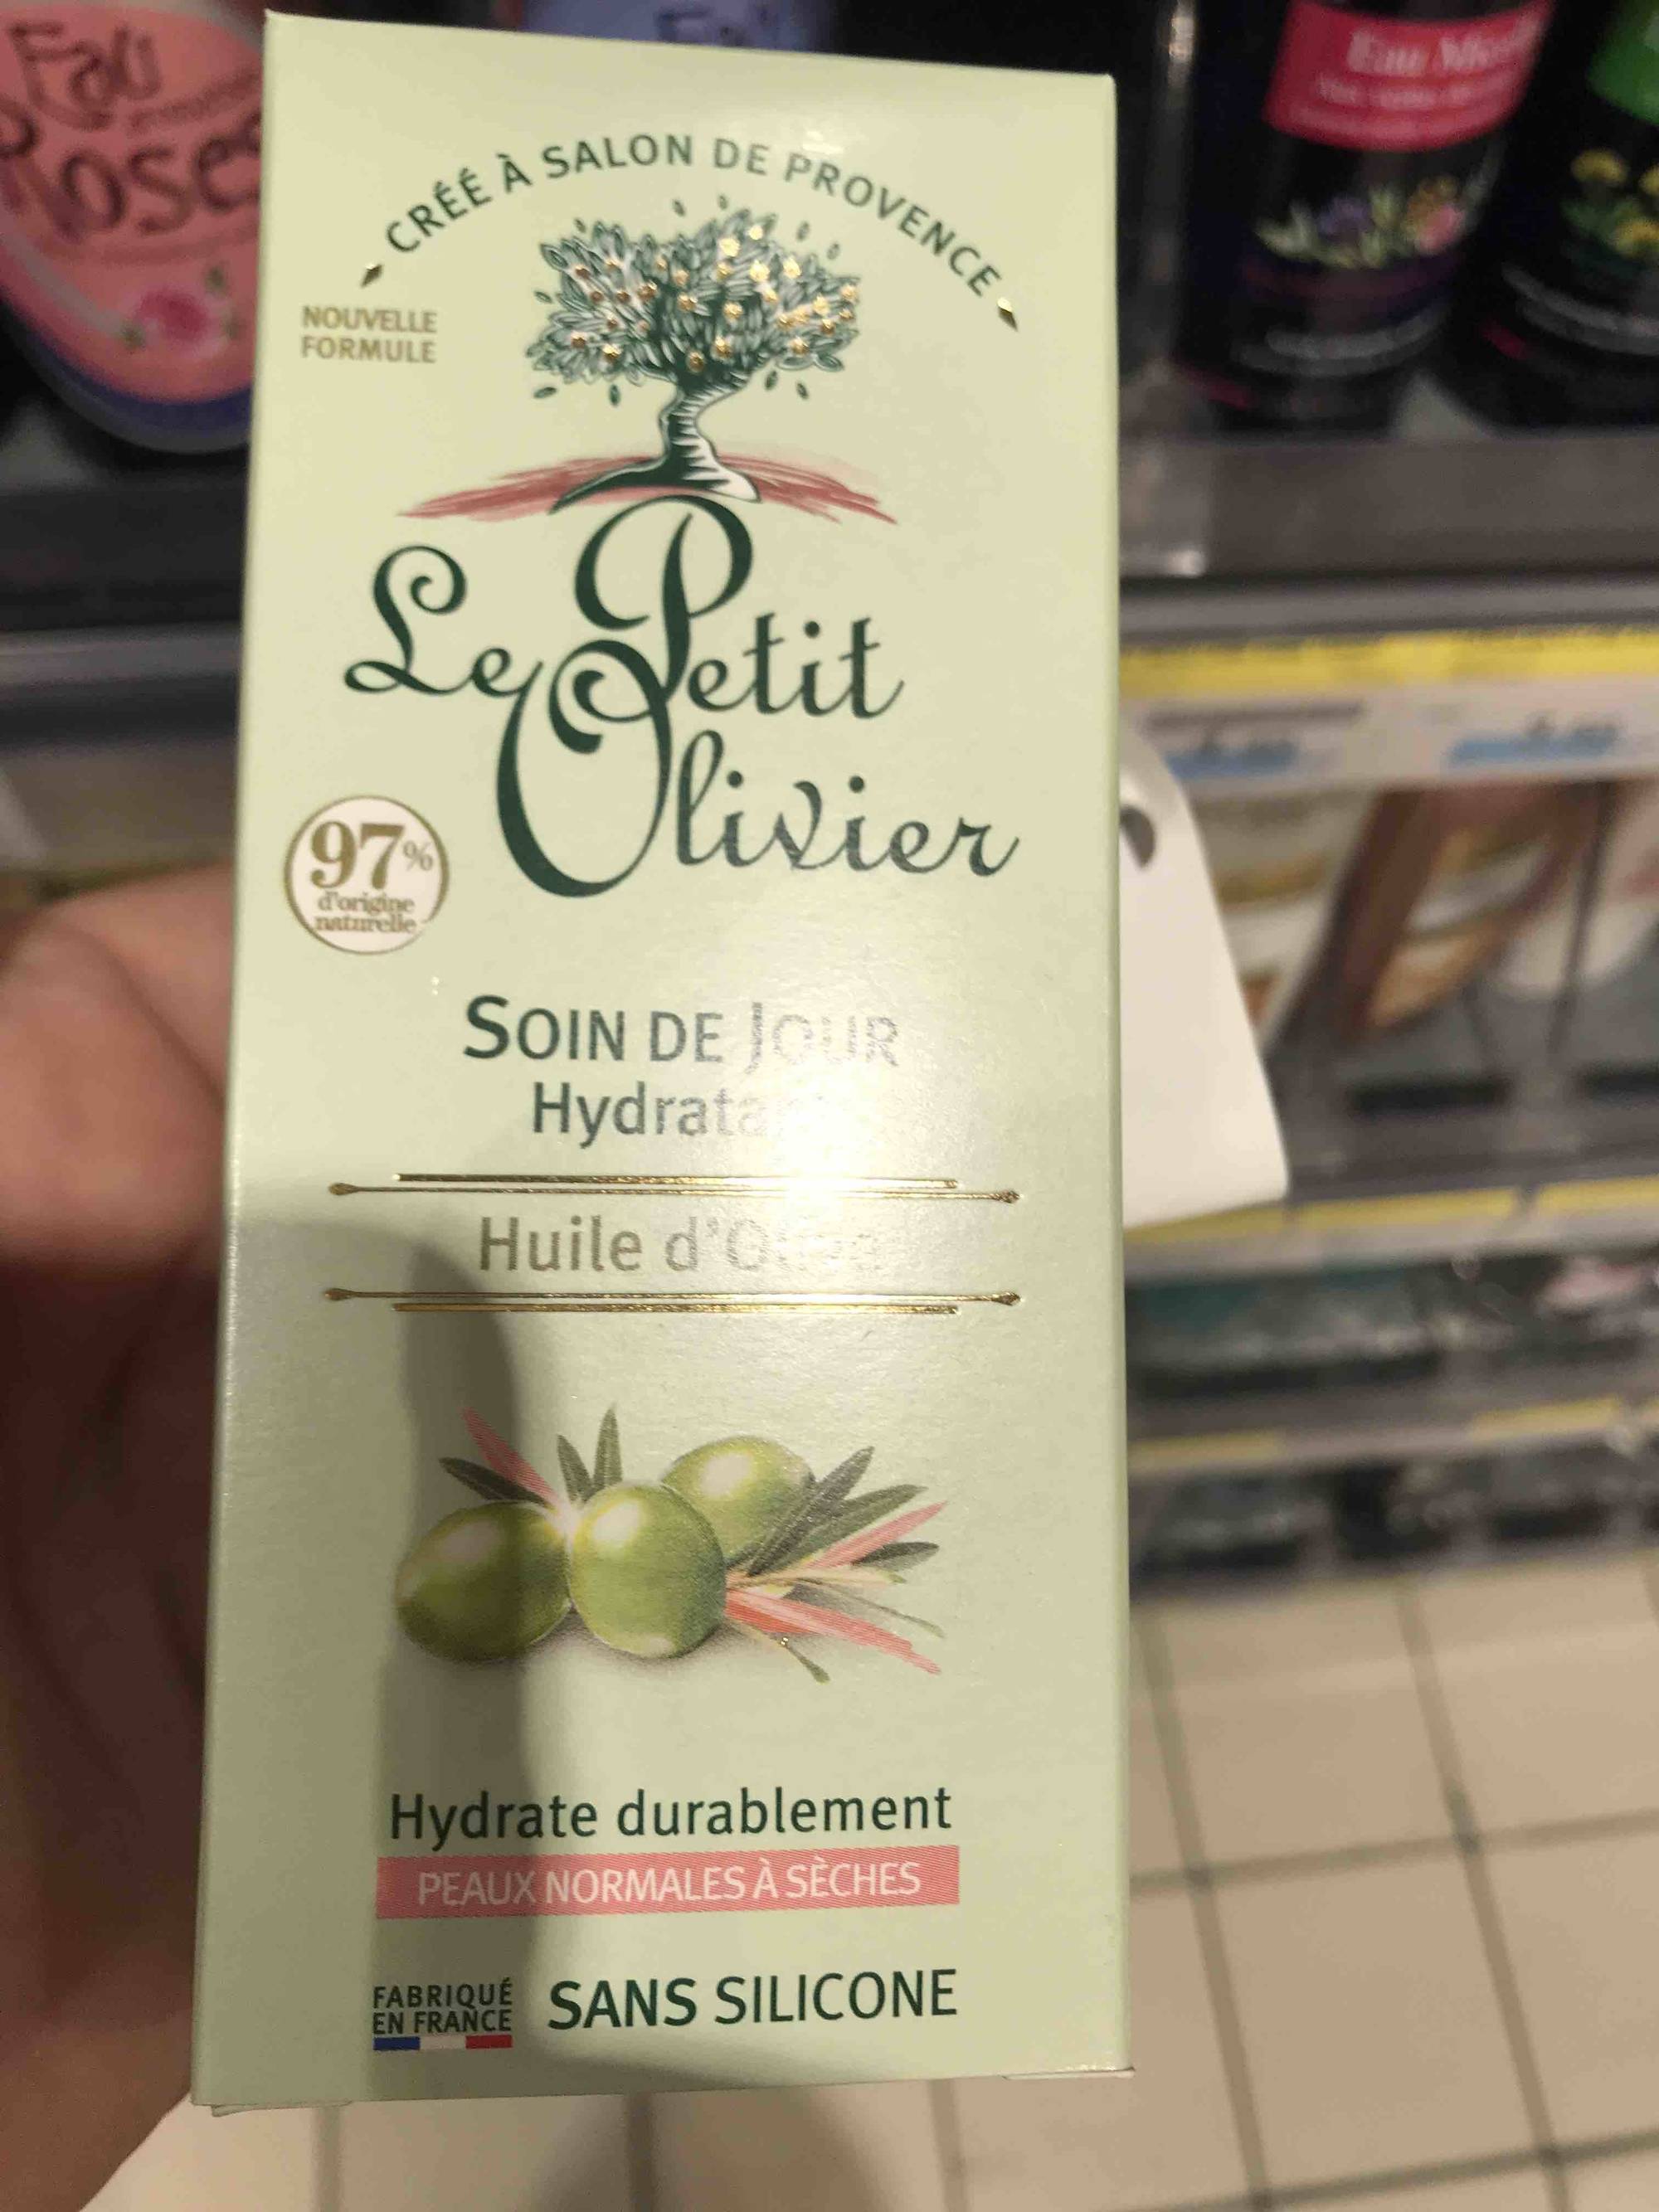 LE PETIT OLIVIER - Huile d'Olive - Soin de jour hydratant